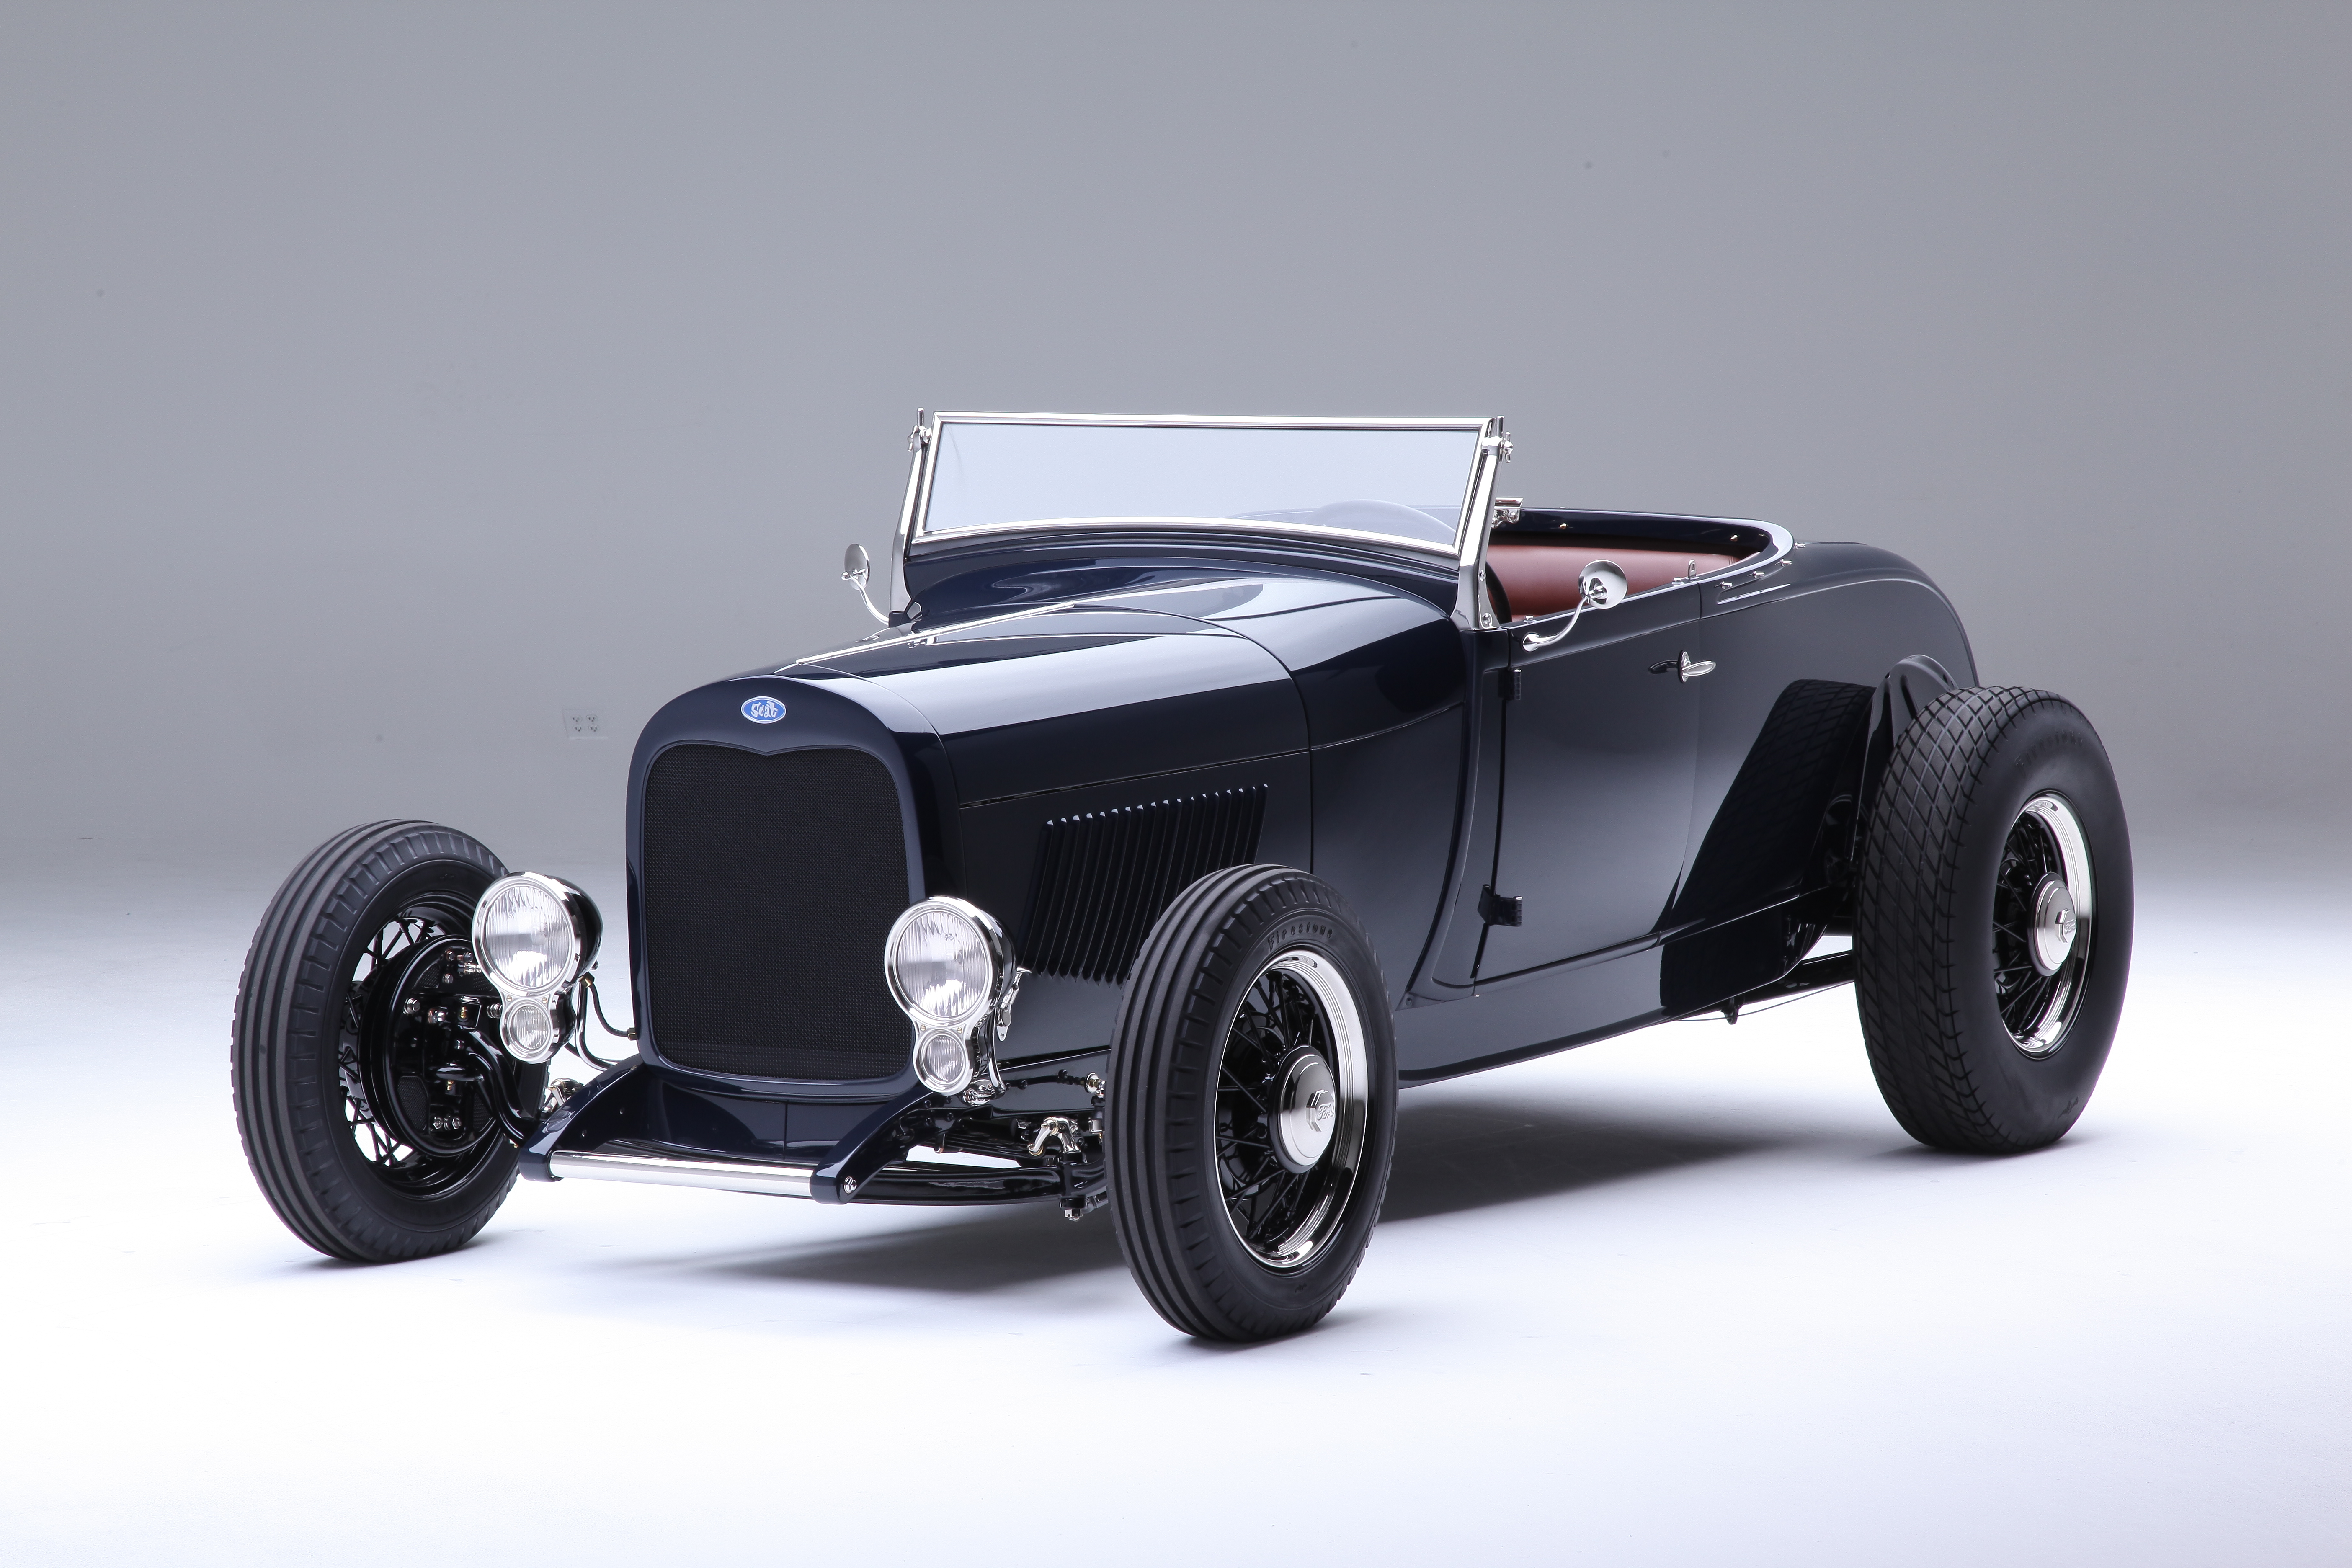 1929 Ford Roadster Hot Rod Vintage Car 5616x3744